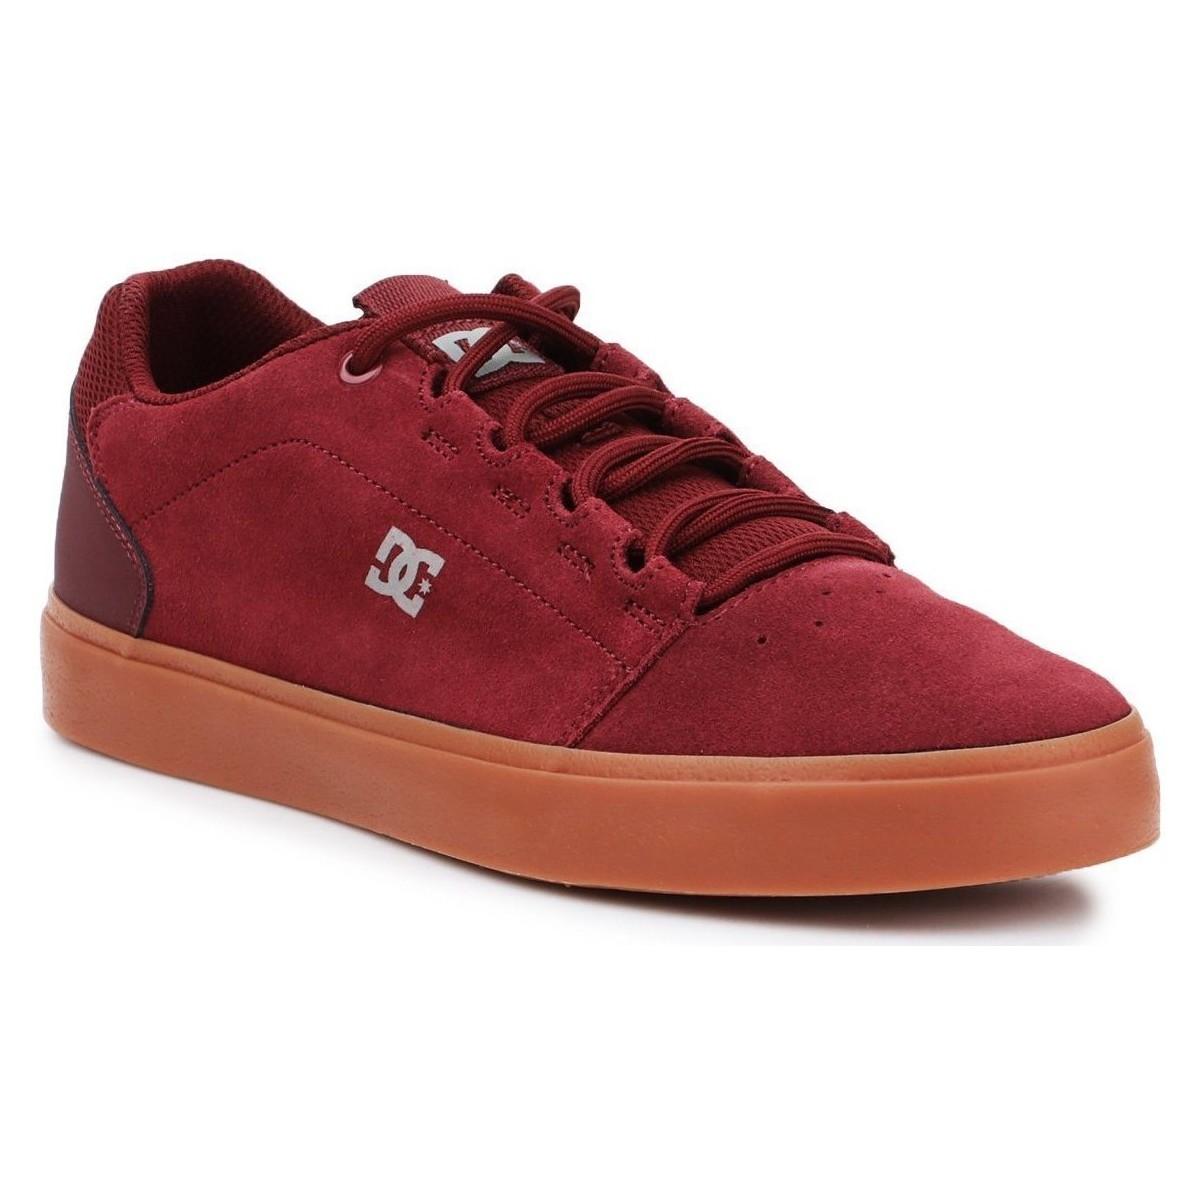 Pantofi Bărbați Pantofi de skate DC Shoes DC Hyde ADYS300580-BUR roșu